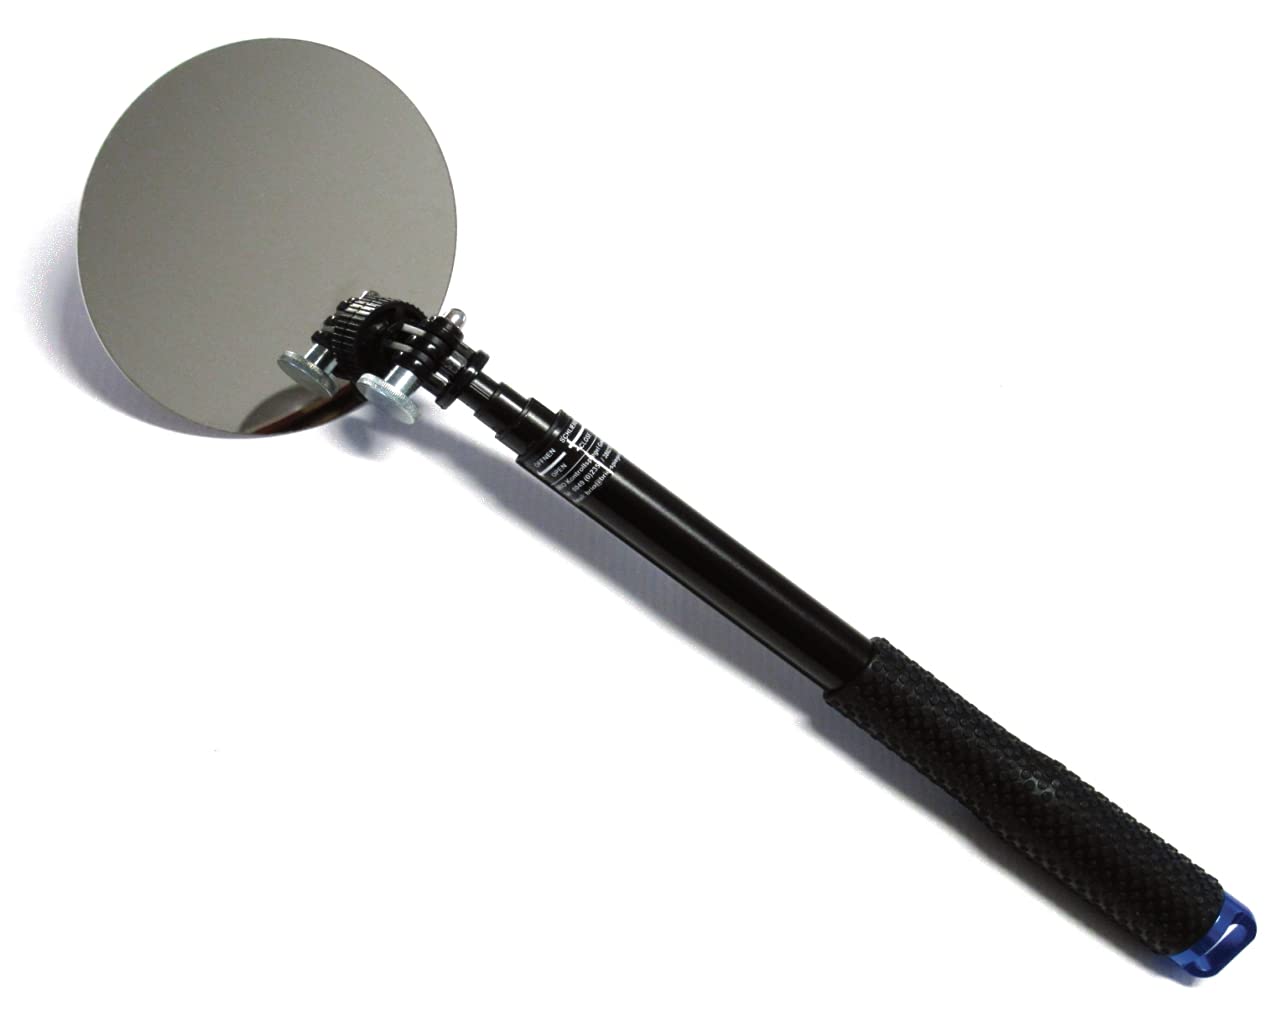 Inspektionsspiegel - 300-1000 mm Teleskop aus Aluminium mit 150 mm Metallspiegel von BRIO Kontrollspiegel GmbH